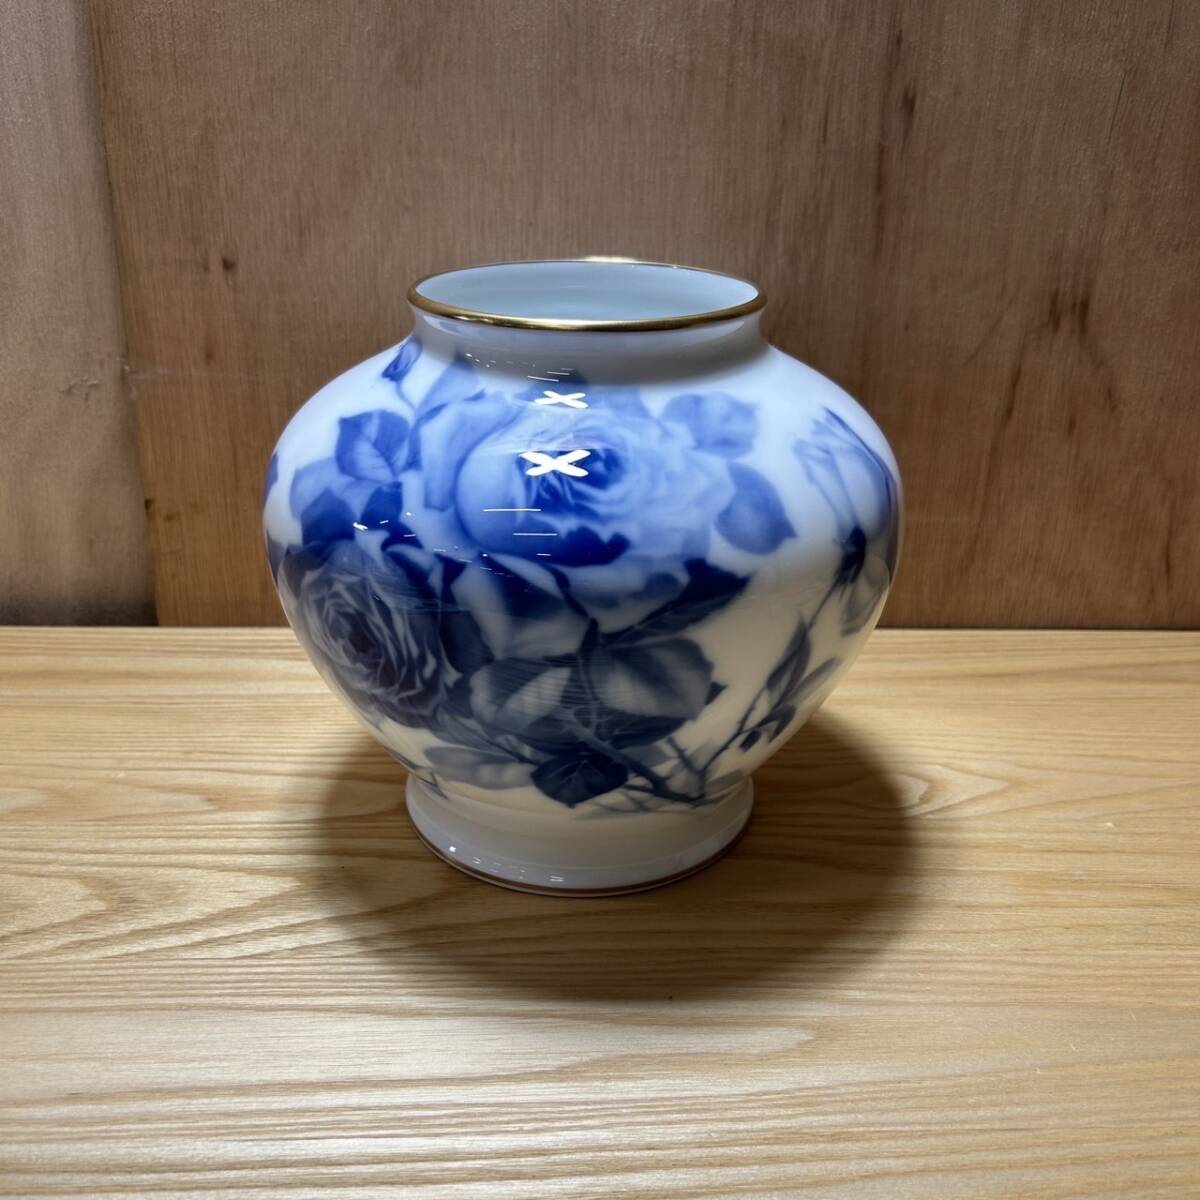 * Ookura Touen голубой rose ваза ваза для цветов изделие прикладного искусства керамика ( б/у товар / текущее состояние товар / хранение товар )*